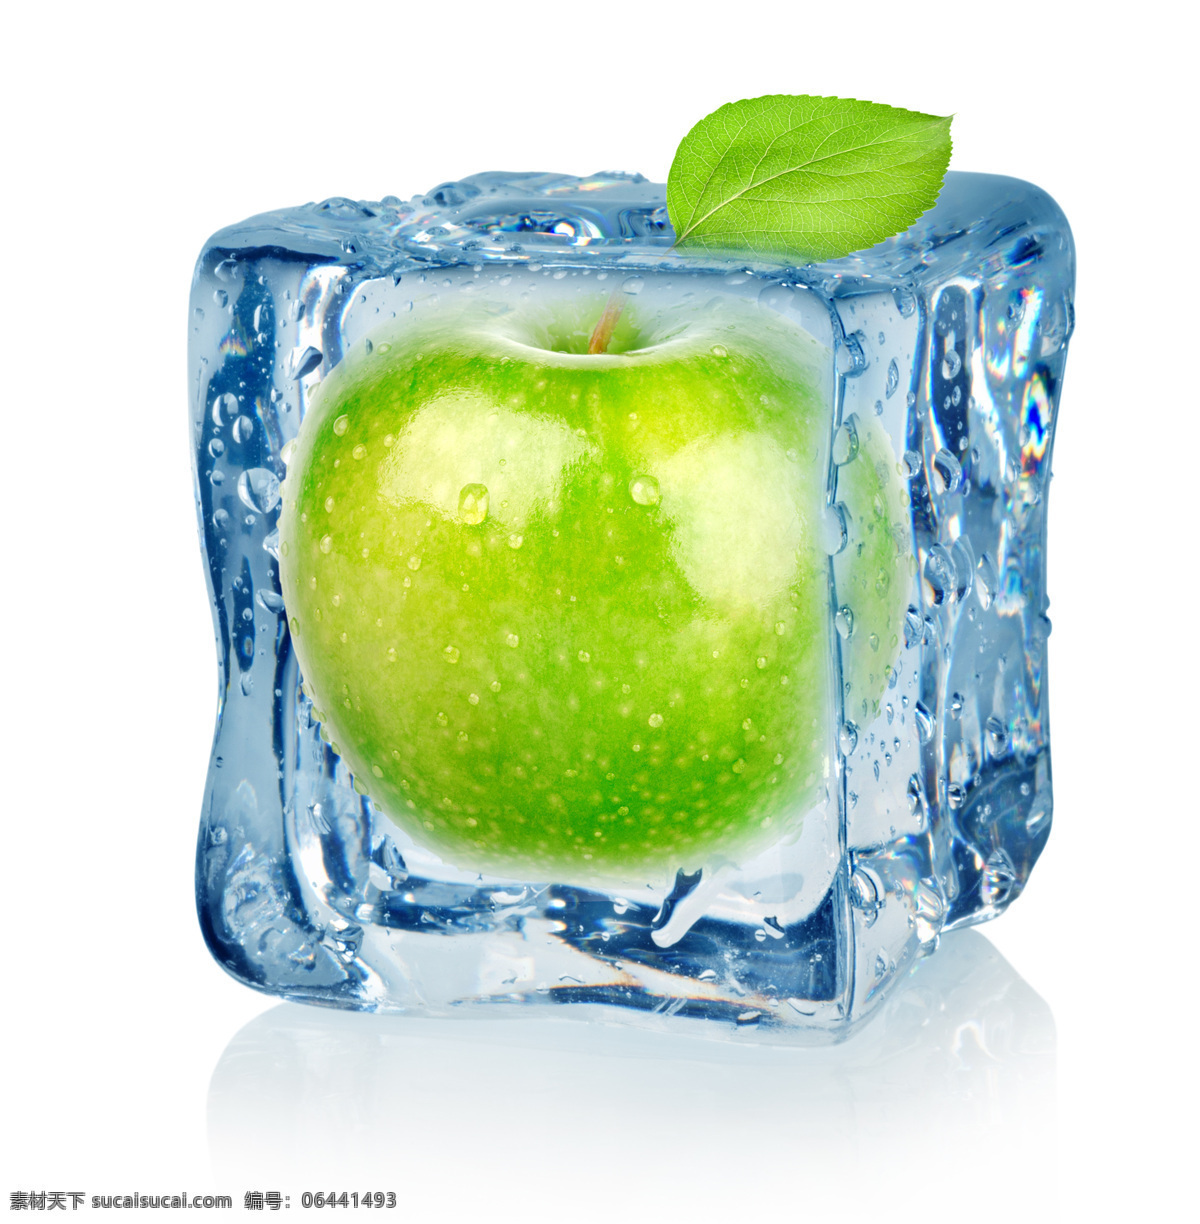 冰块 苹果 青柠檬 青苹果 生物世界 水滴 水果 冰 中 设计素材 模板下载 冰中苹果 叶子 结冰 水珠 新鲜水果 psd源文件